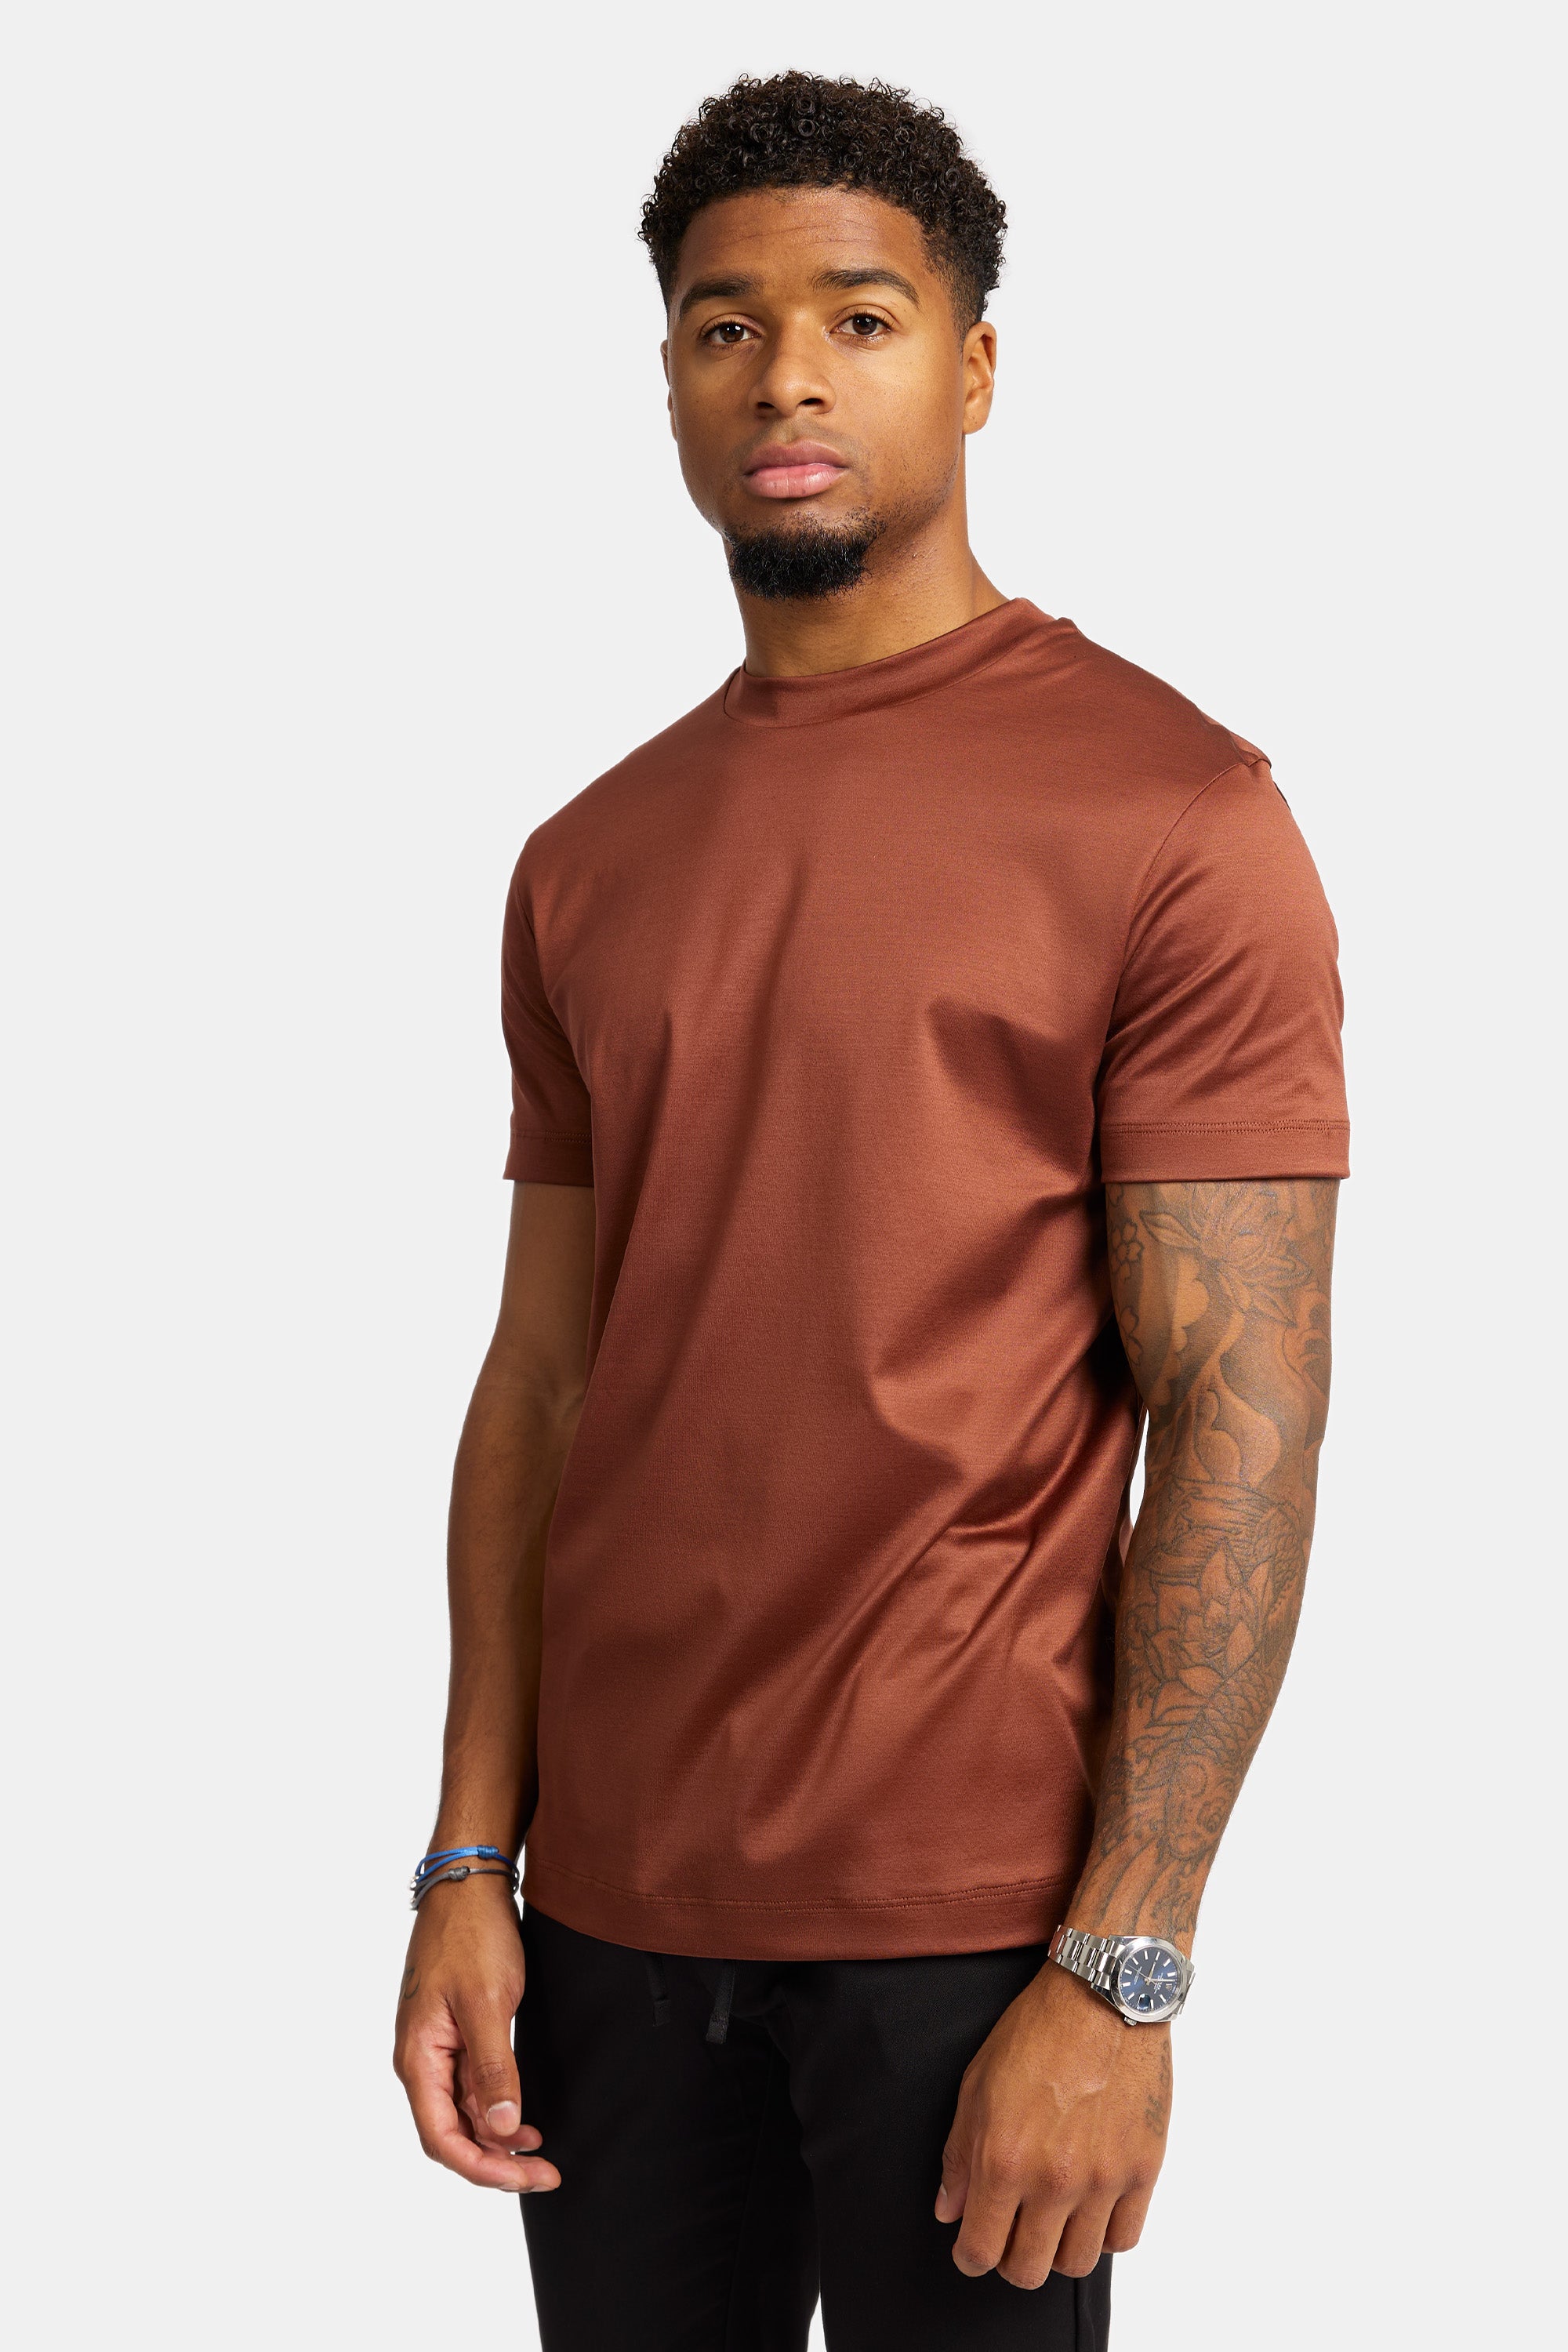 Chestnut Brown T-shirt